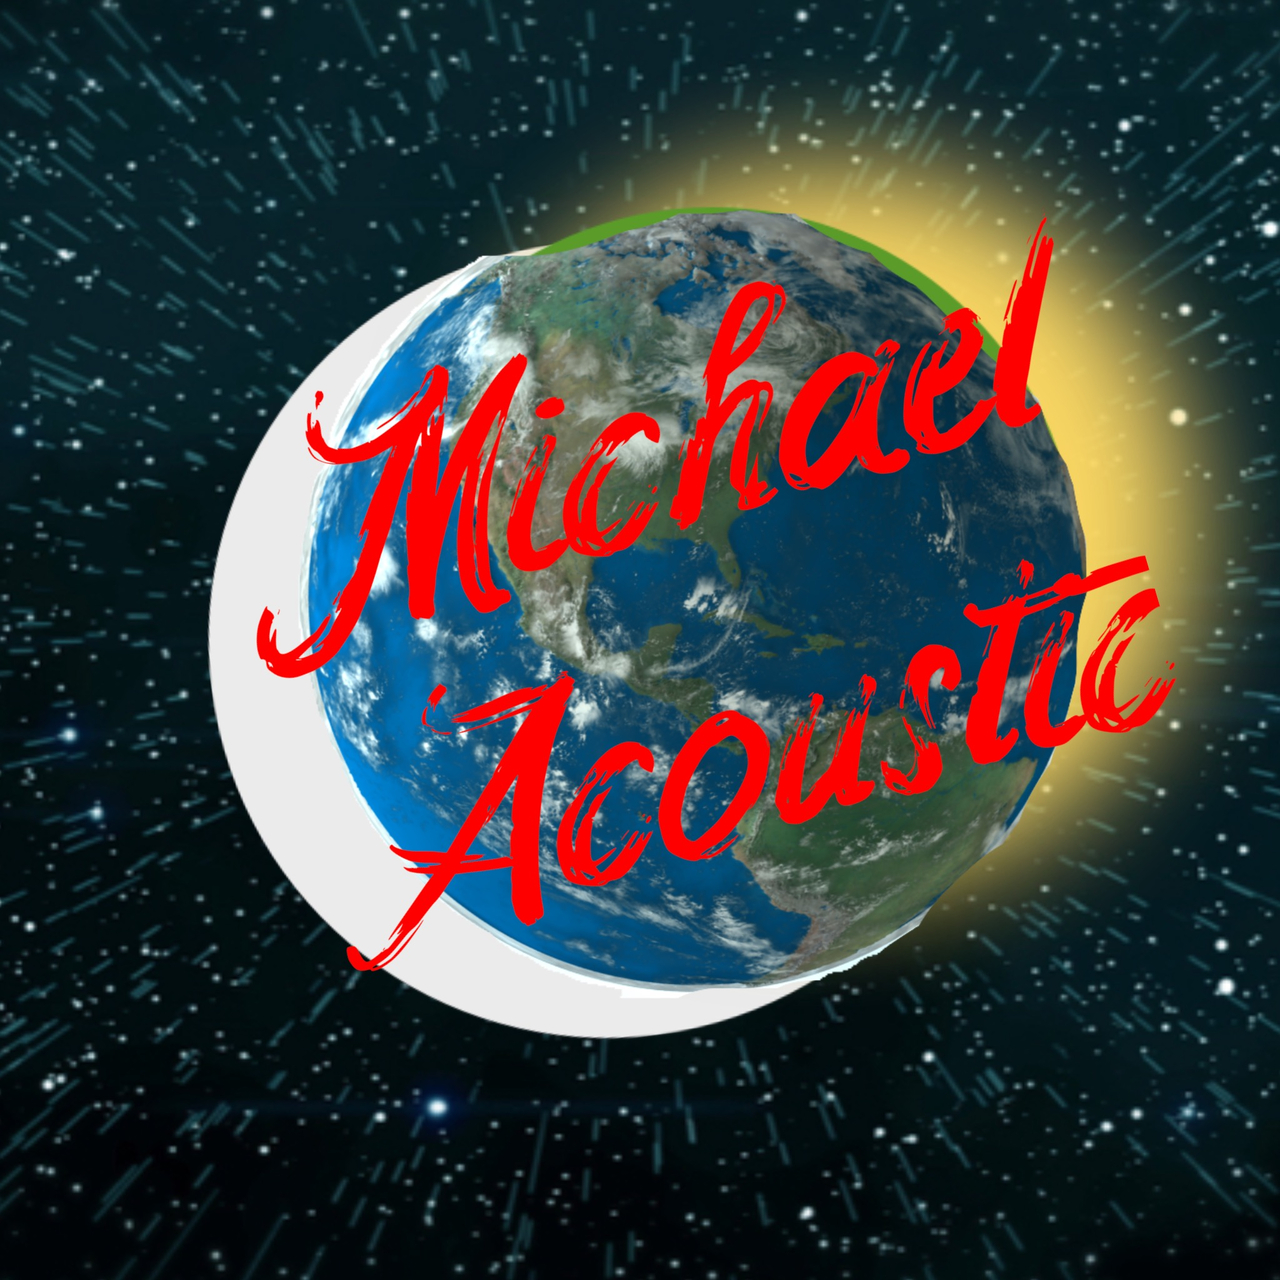 Michael Acoustic